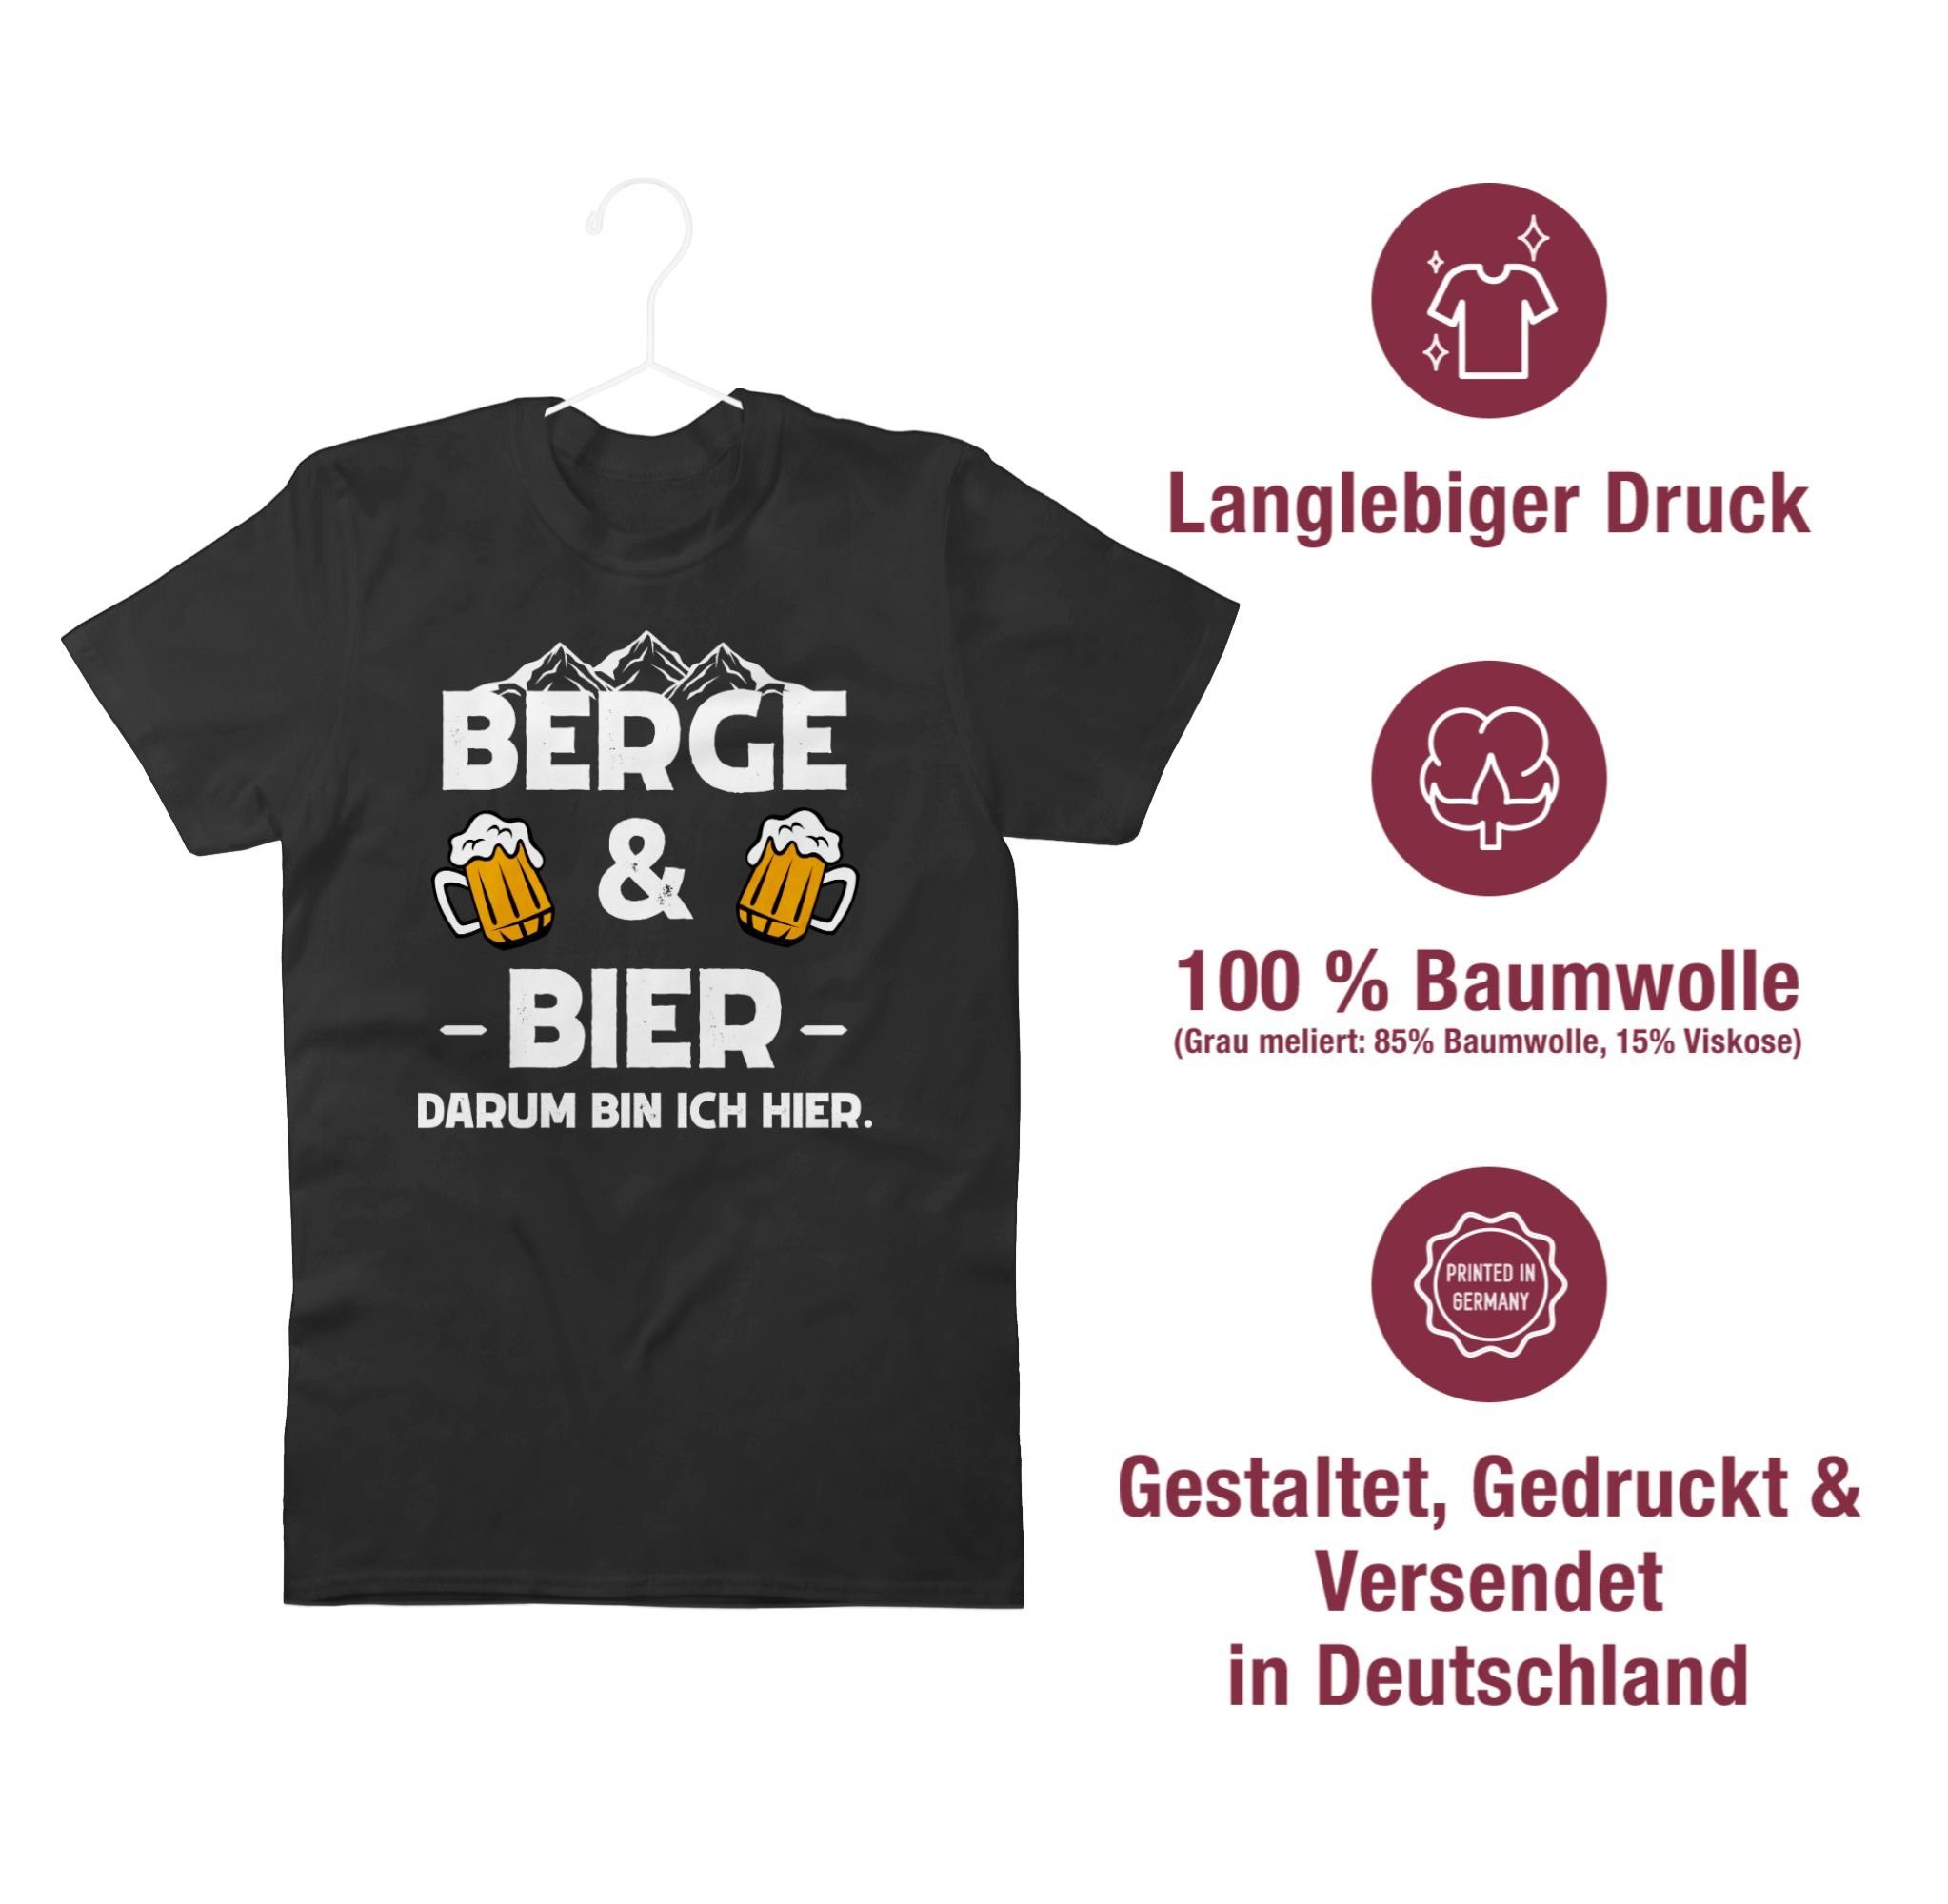 T-Shirt Party Apres Shirtracer Bier Schwarz Ski und Berge 1